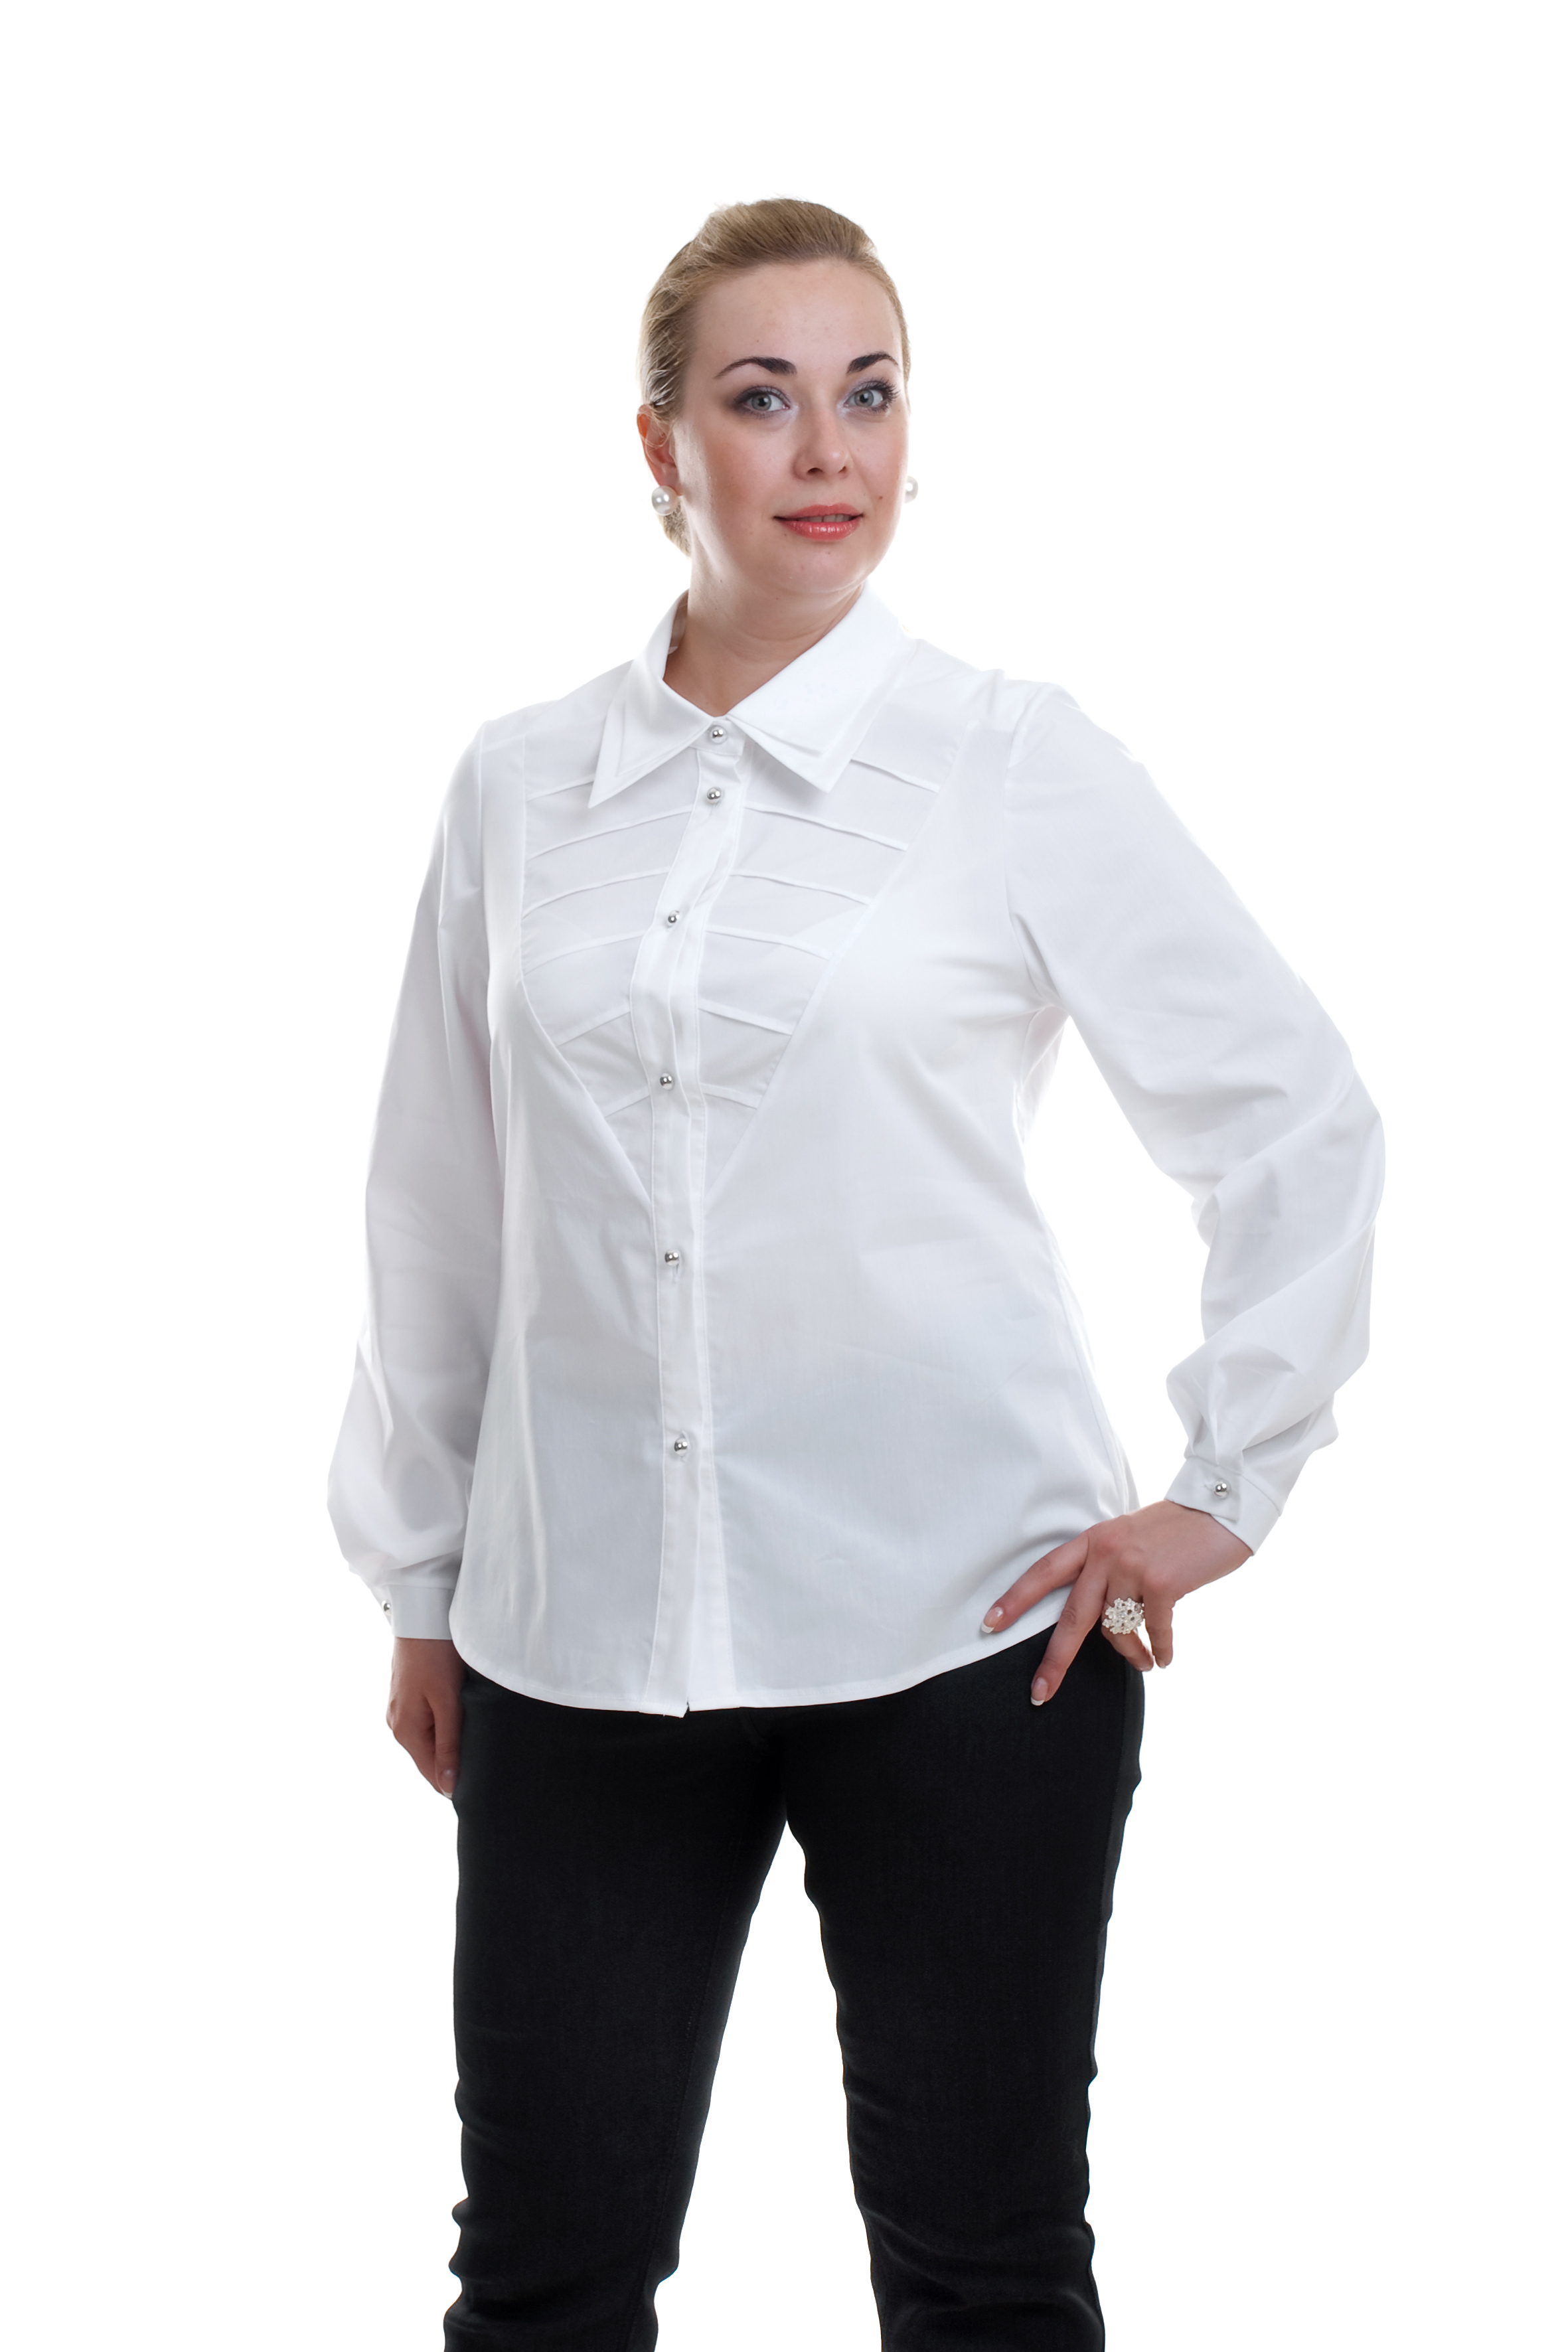 Где можно купить блузки. Рубашка для полных женщин. Белая блузка для полных женщин. Блузки женские для полных.